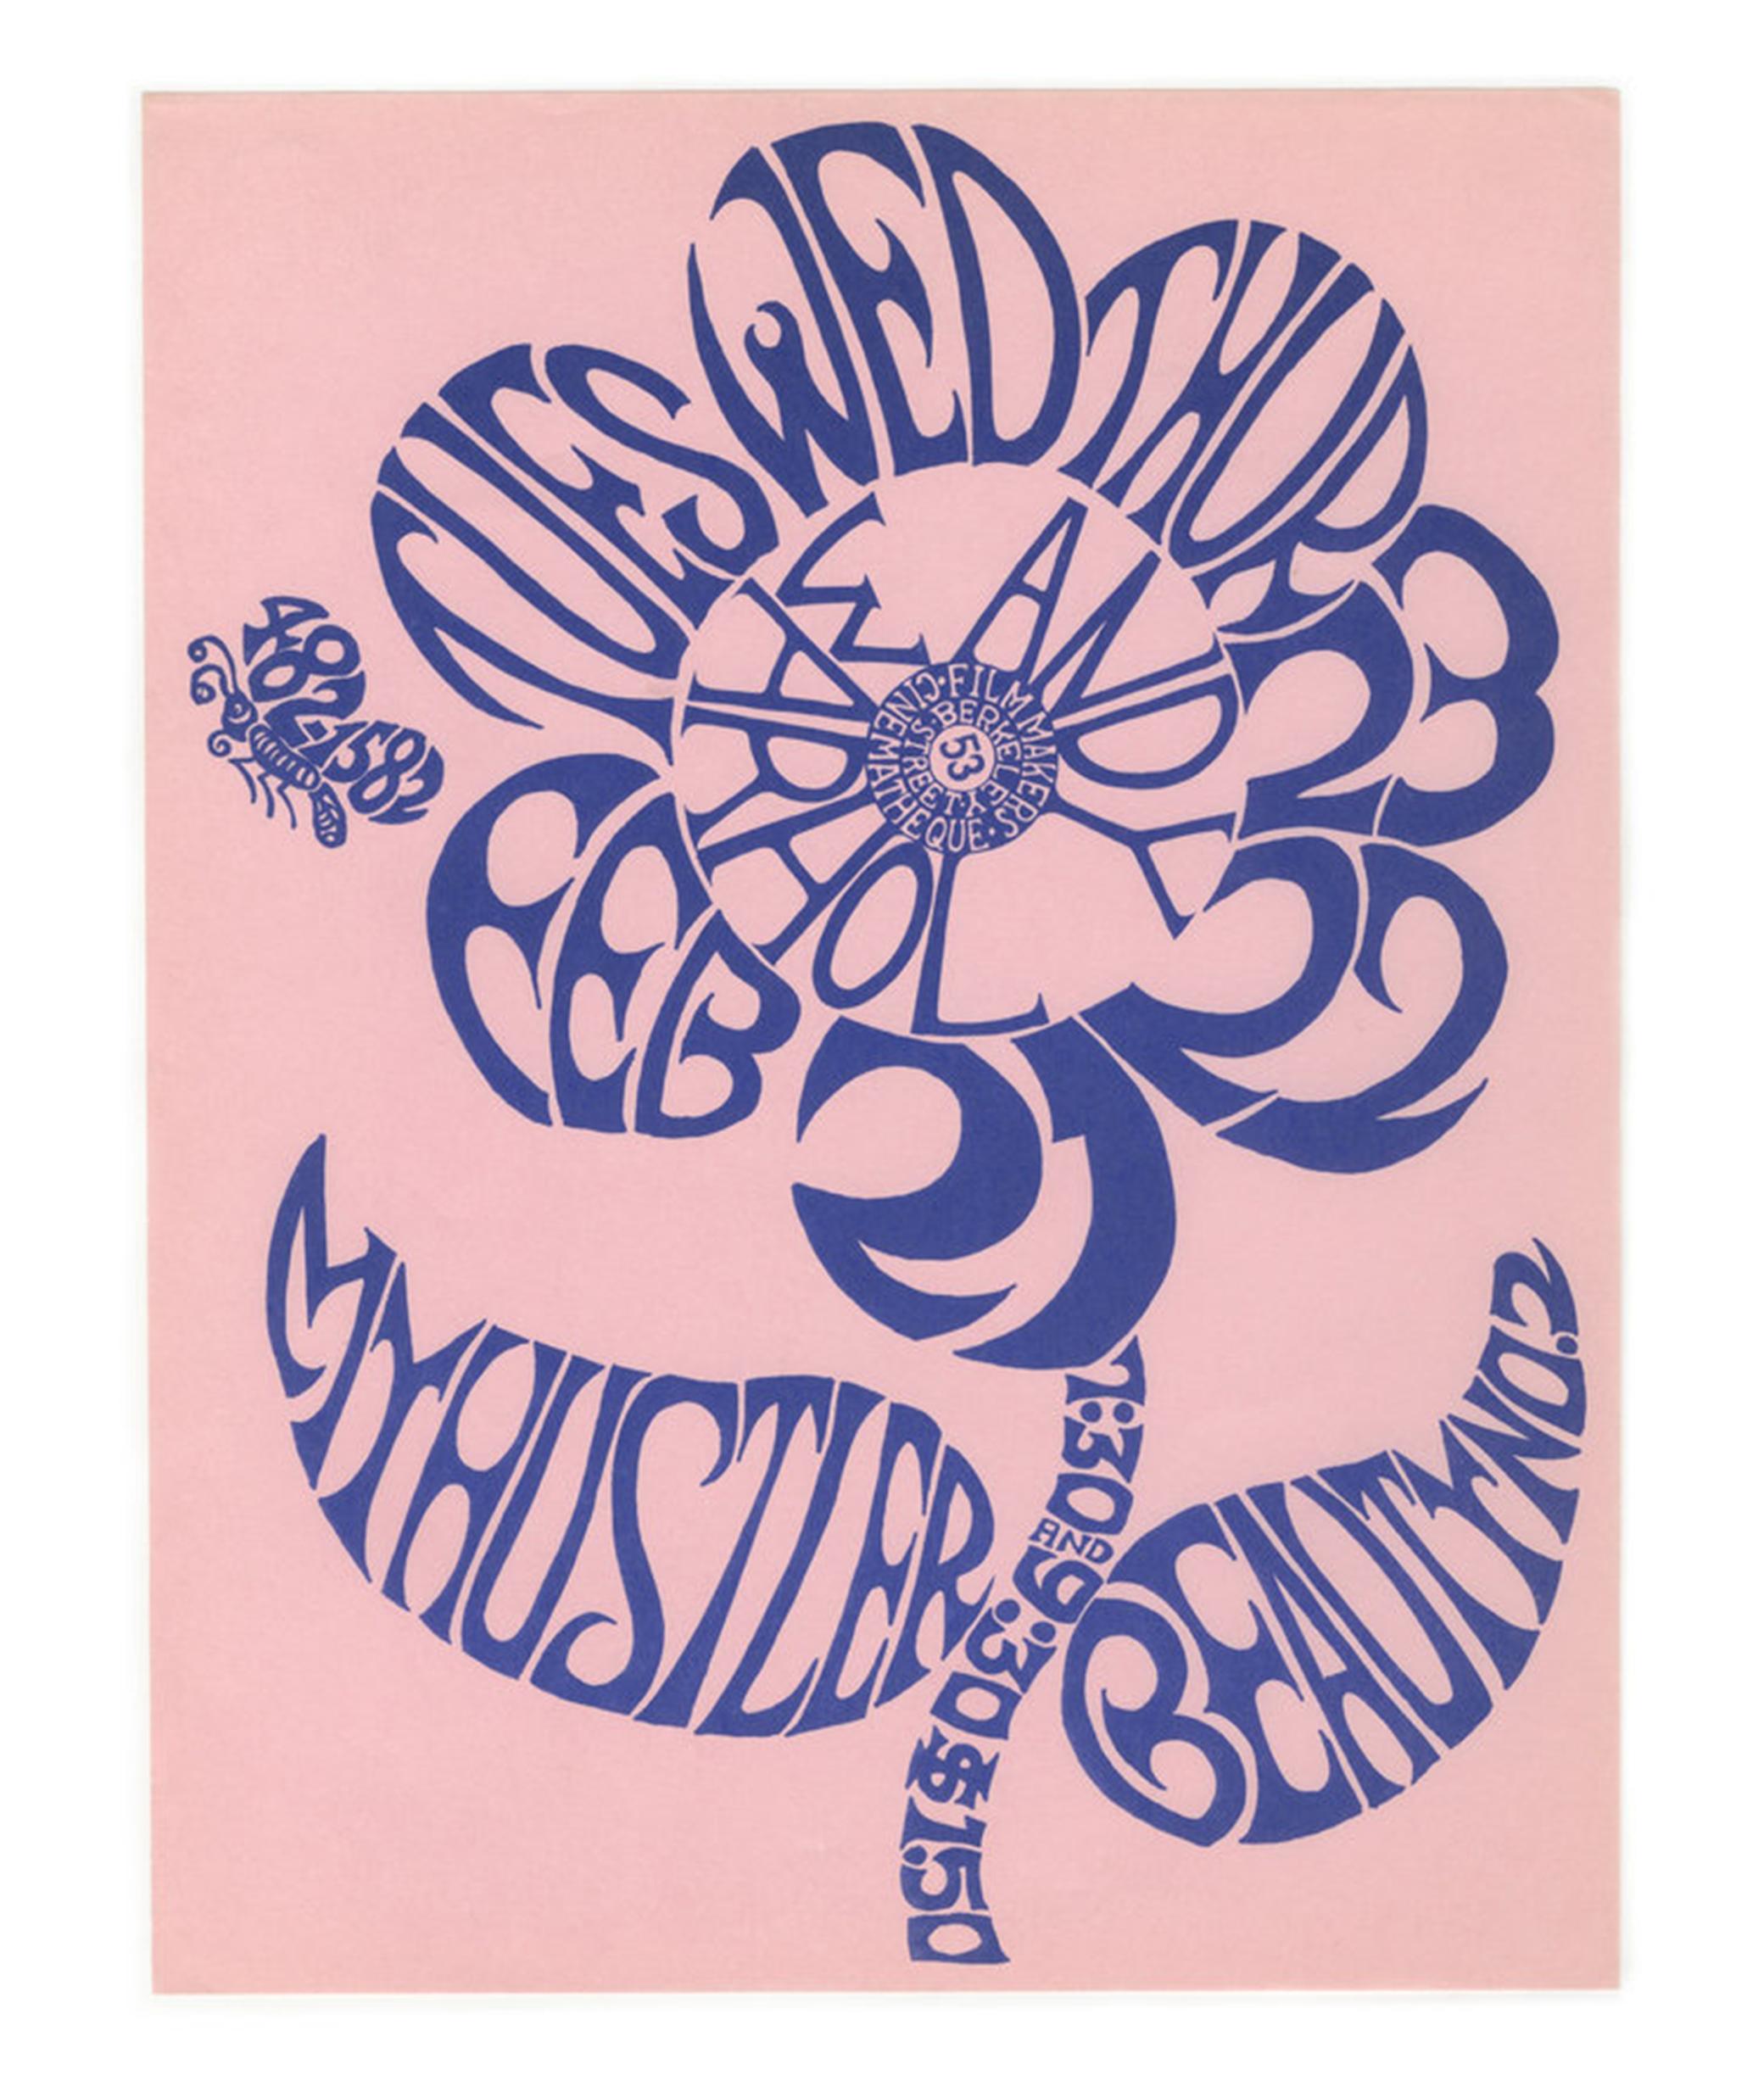 Abstract Print Andy Warhol - My Hustler and Beauty n° 2 (l'une des 100 meilleures affiches de Counter Culture jamais réalisées) 